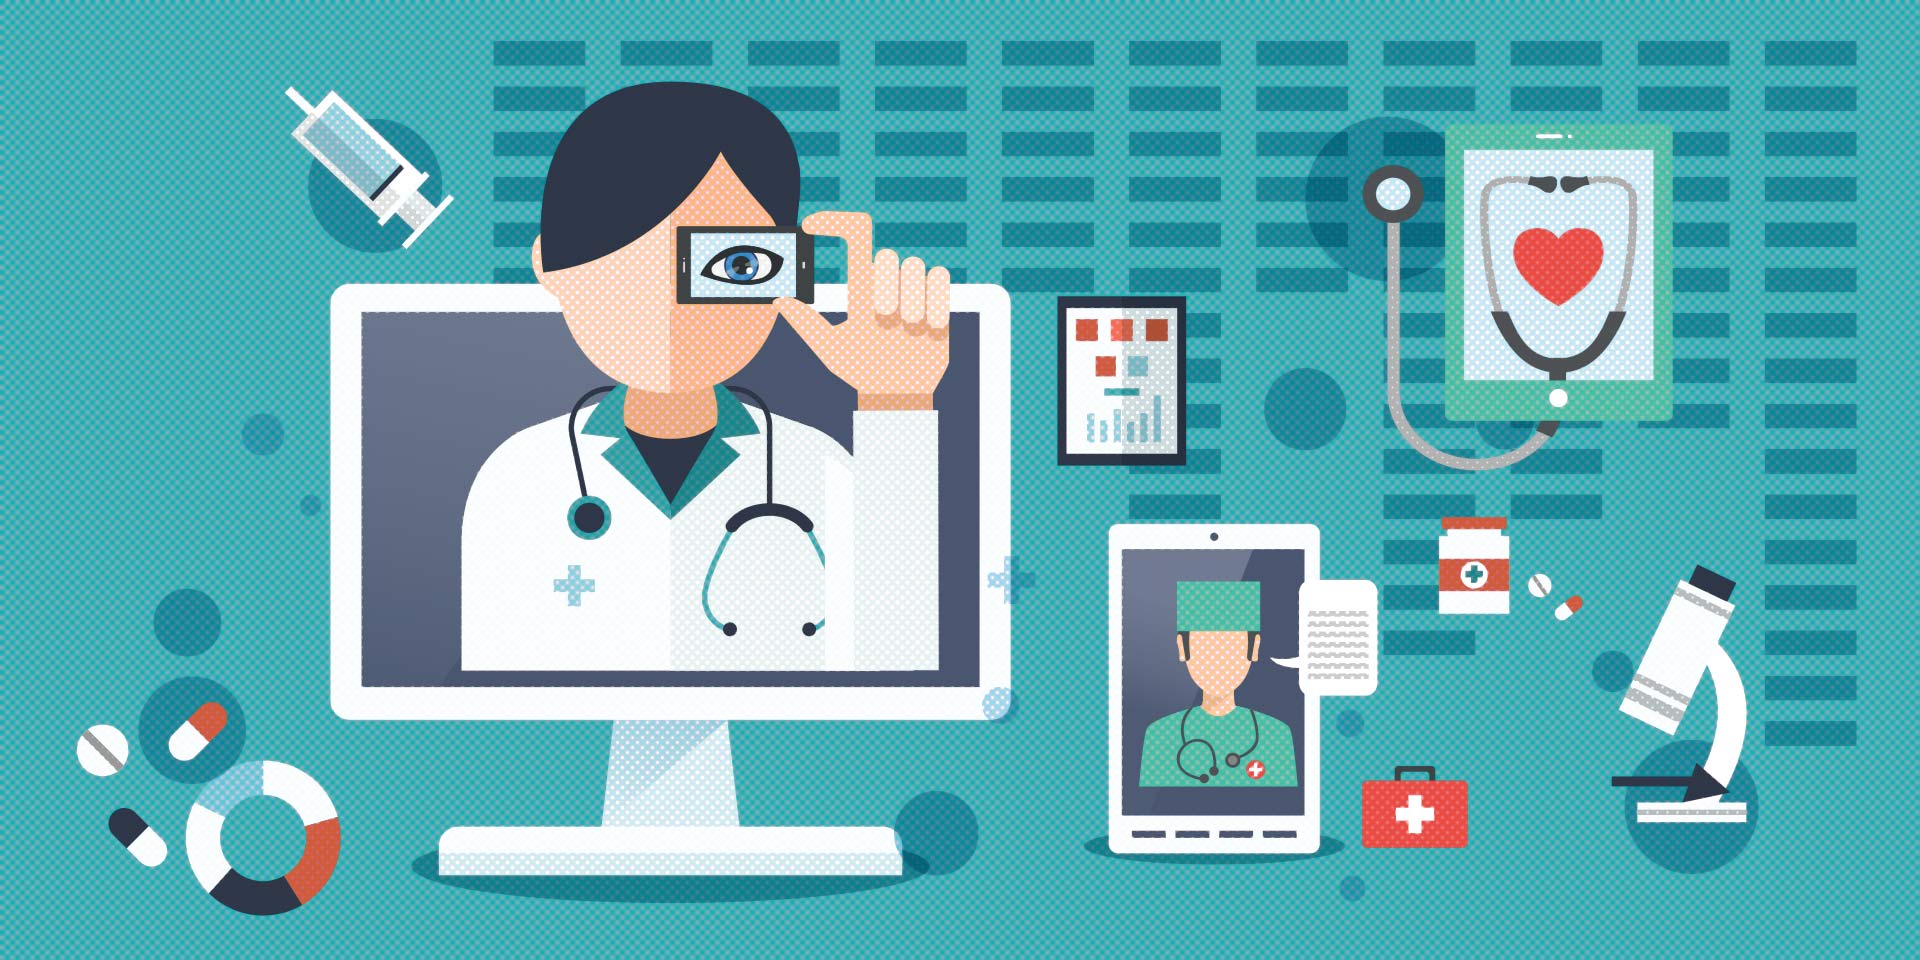 Организация онлайн-платформы для консультаций с врачами через видеосвязь